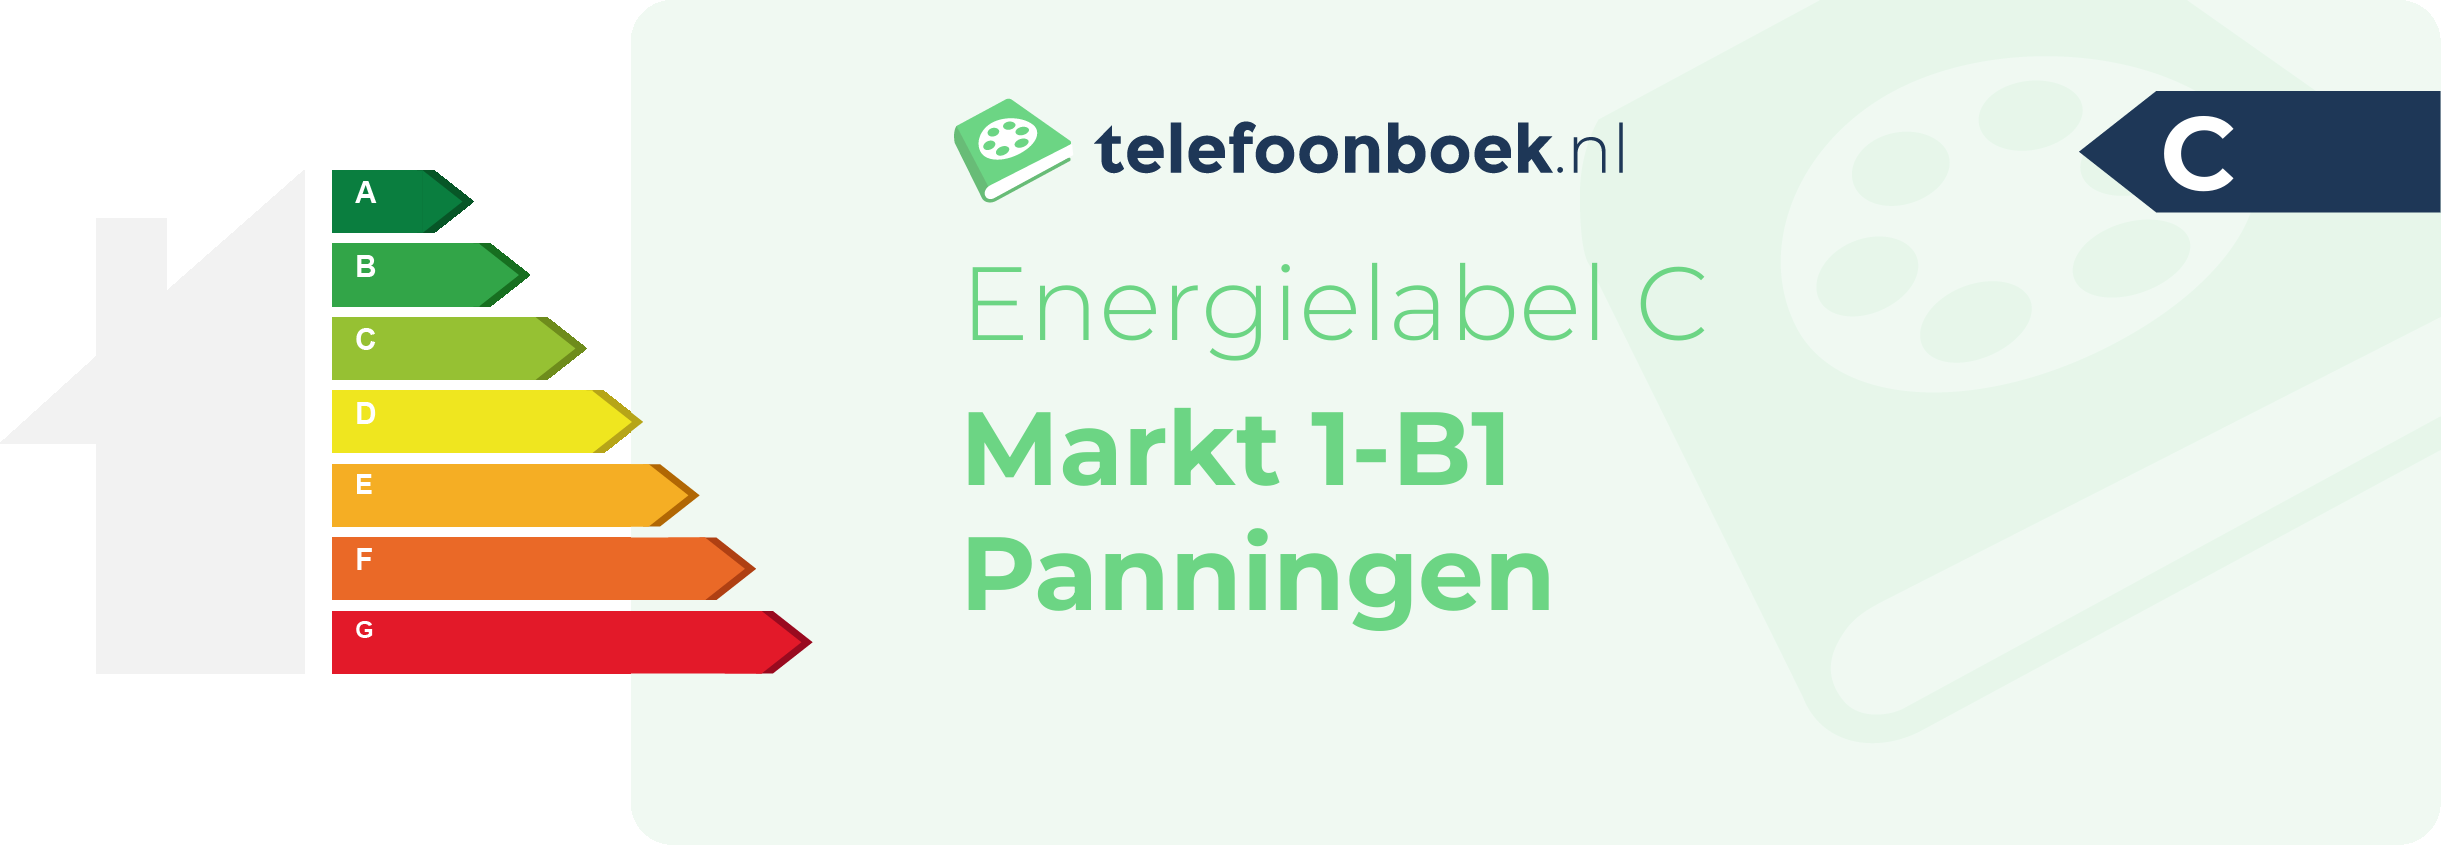 Energielabel Markt 1-B1 Panningen